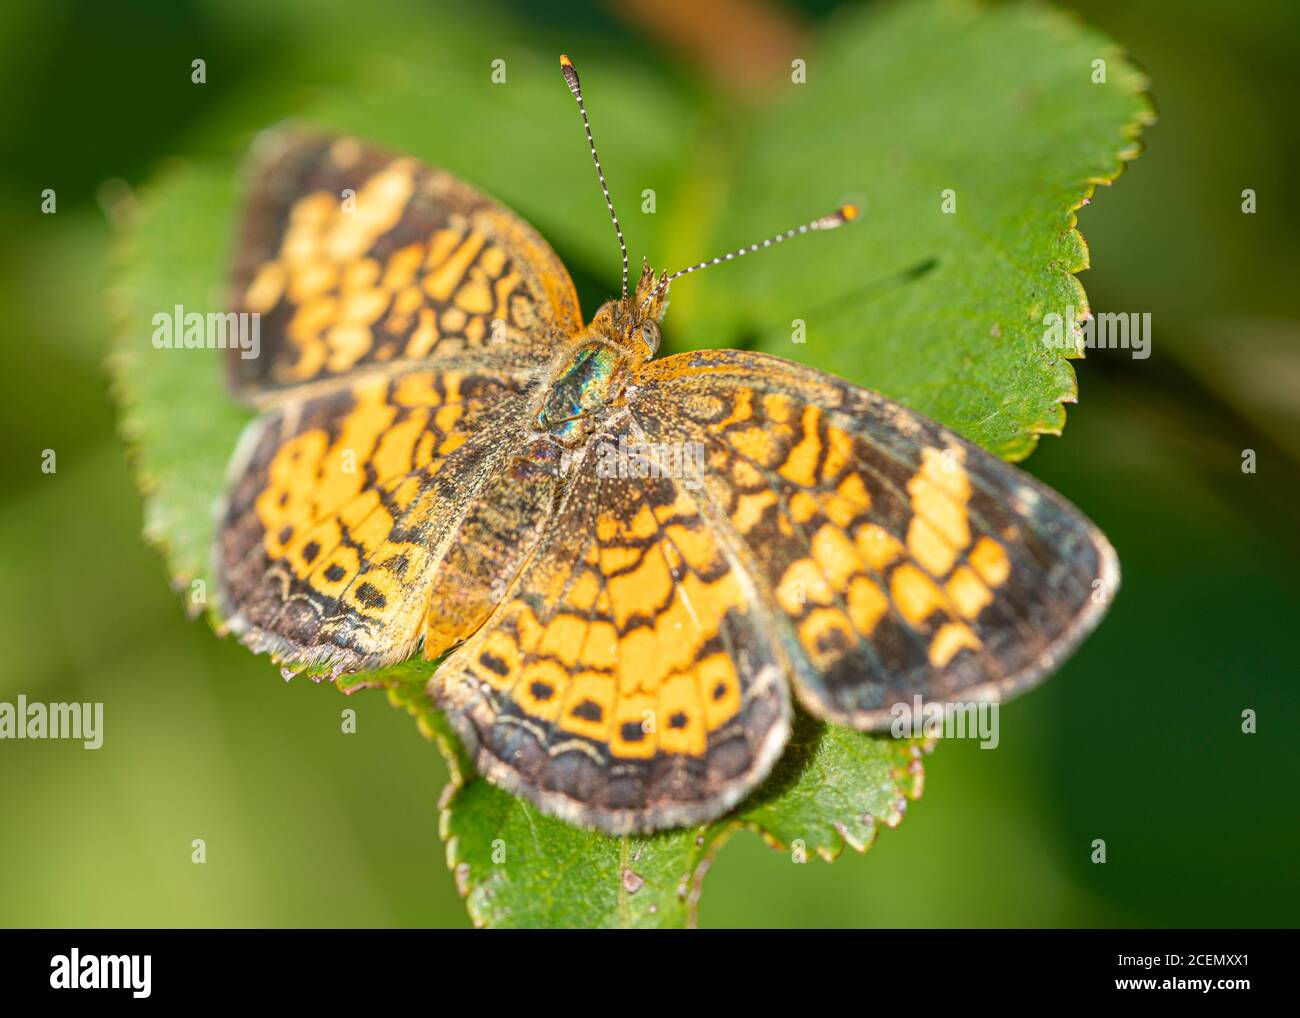 Ein silbrig karierfleckig Schmetterling ruht auf einem Blatt in der Sommersonne. Stockfoto